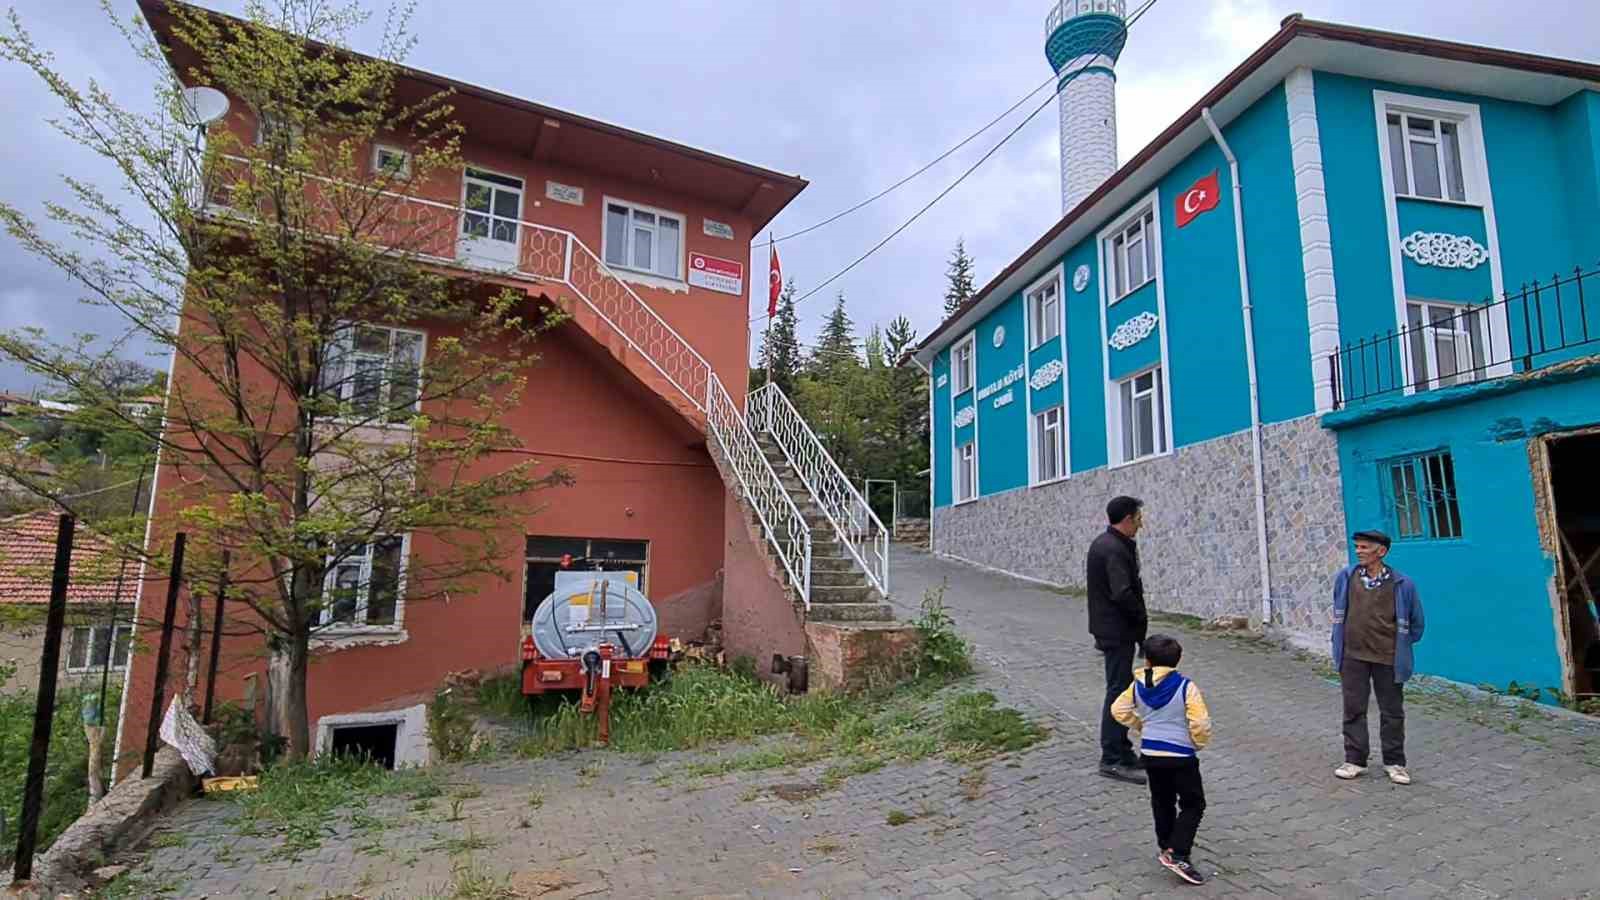 Emet’in Umutlu köyünde Erdoğan sevgisi